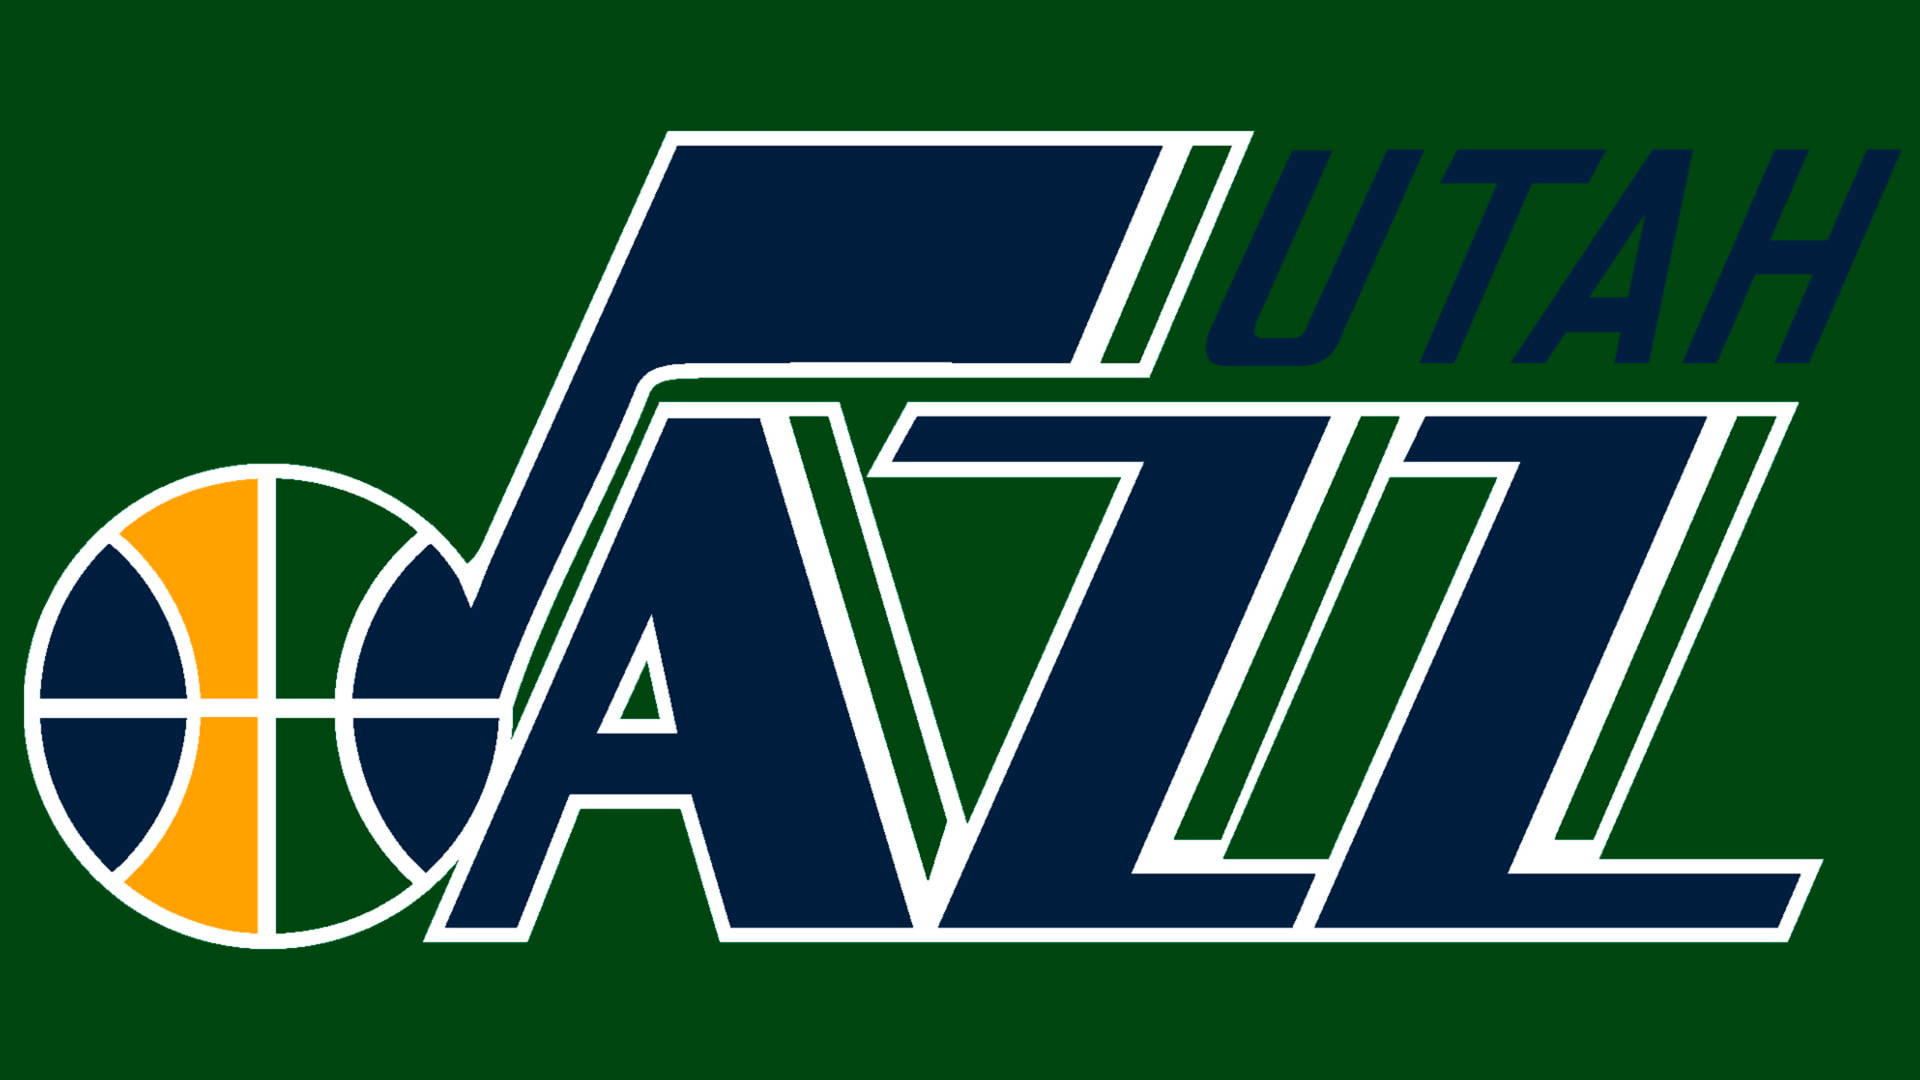 Utah Jazz Name Logo On Green